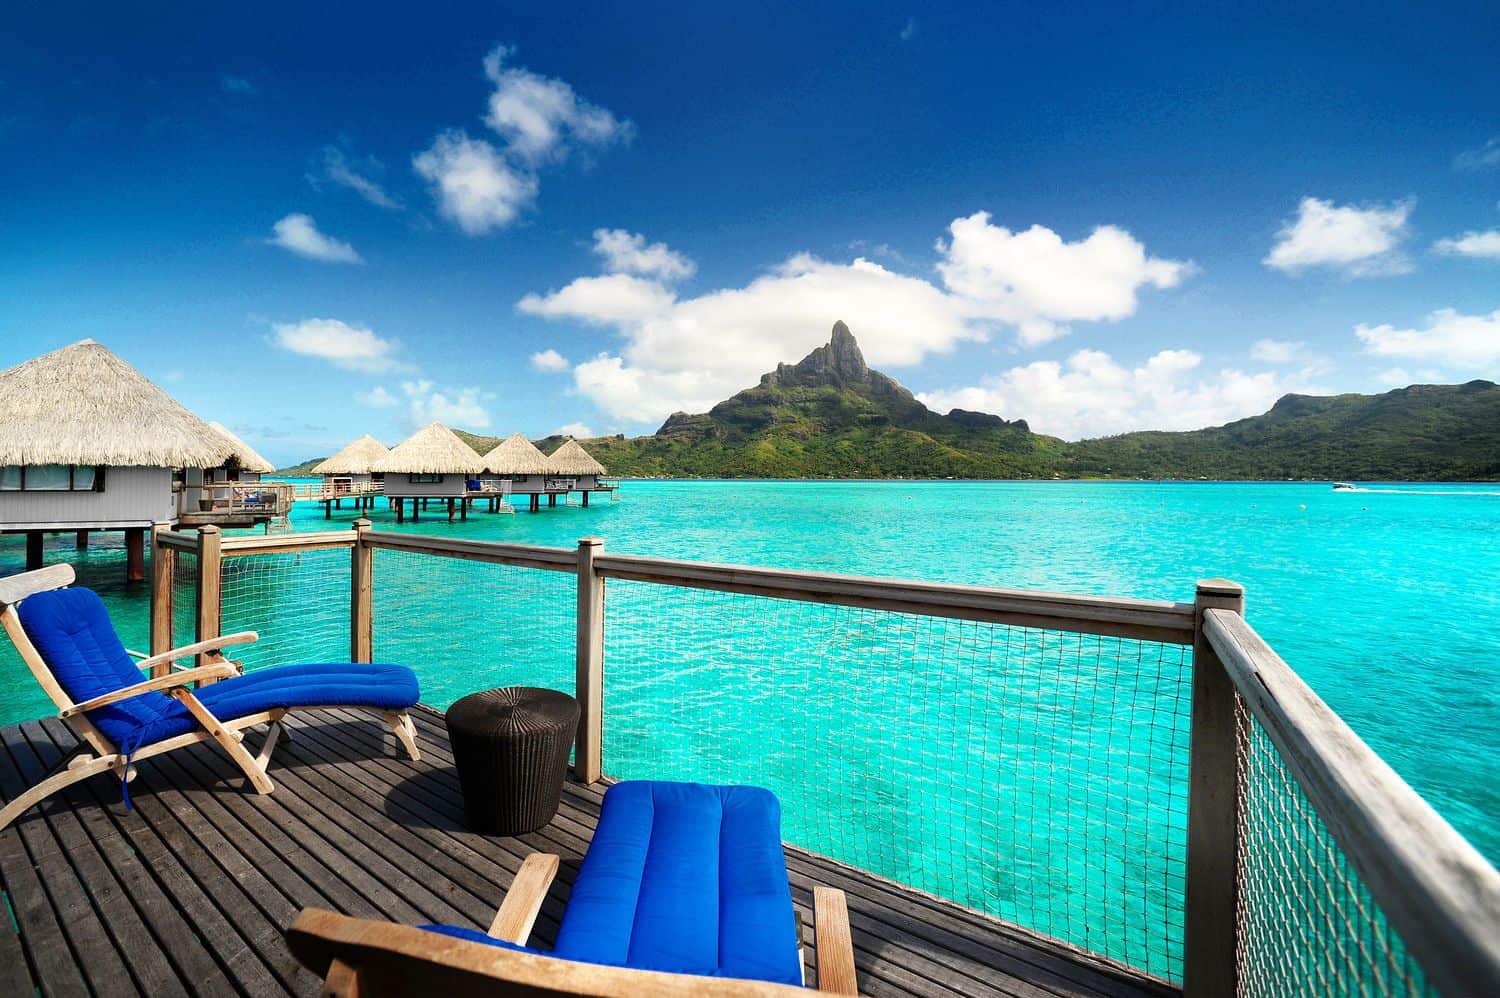 The Maldives or Bora Bora - which is better?